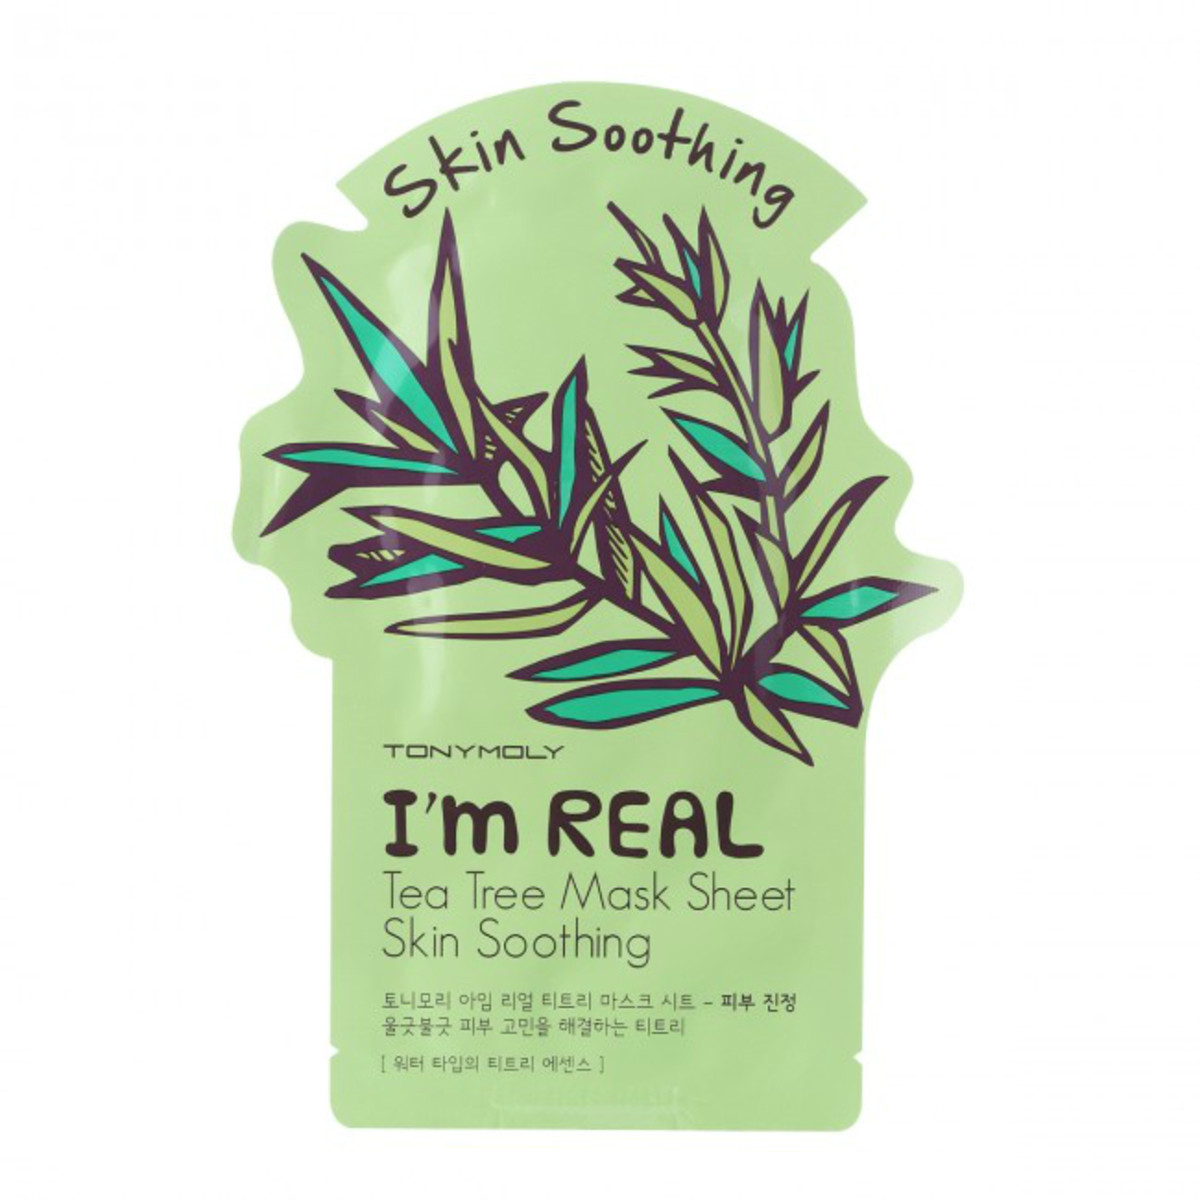 Tony Moly I'm Real Tea Tree Mask Sheet (set of two), $7.50, available at Sephora.